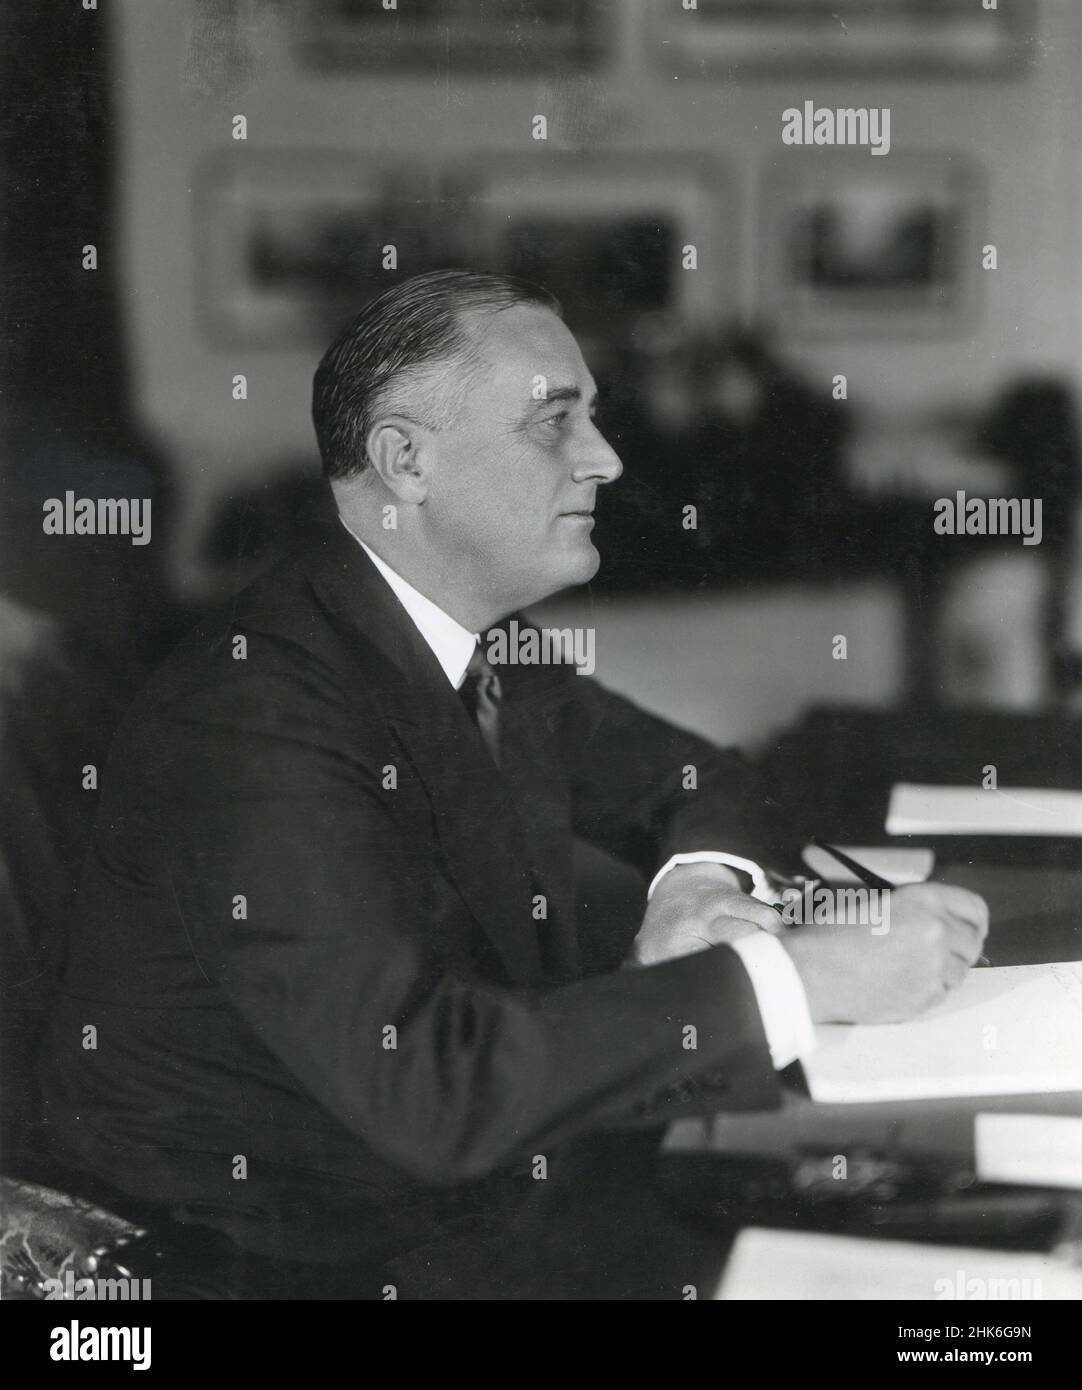 A principios de los años 1930 - El presidente Franklin D. Roosevelt se muestra en su escritorio en la Casa Blanca. Foto de stock